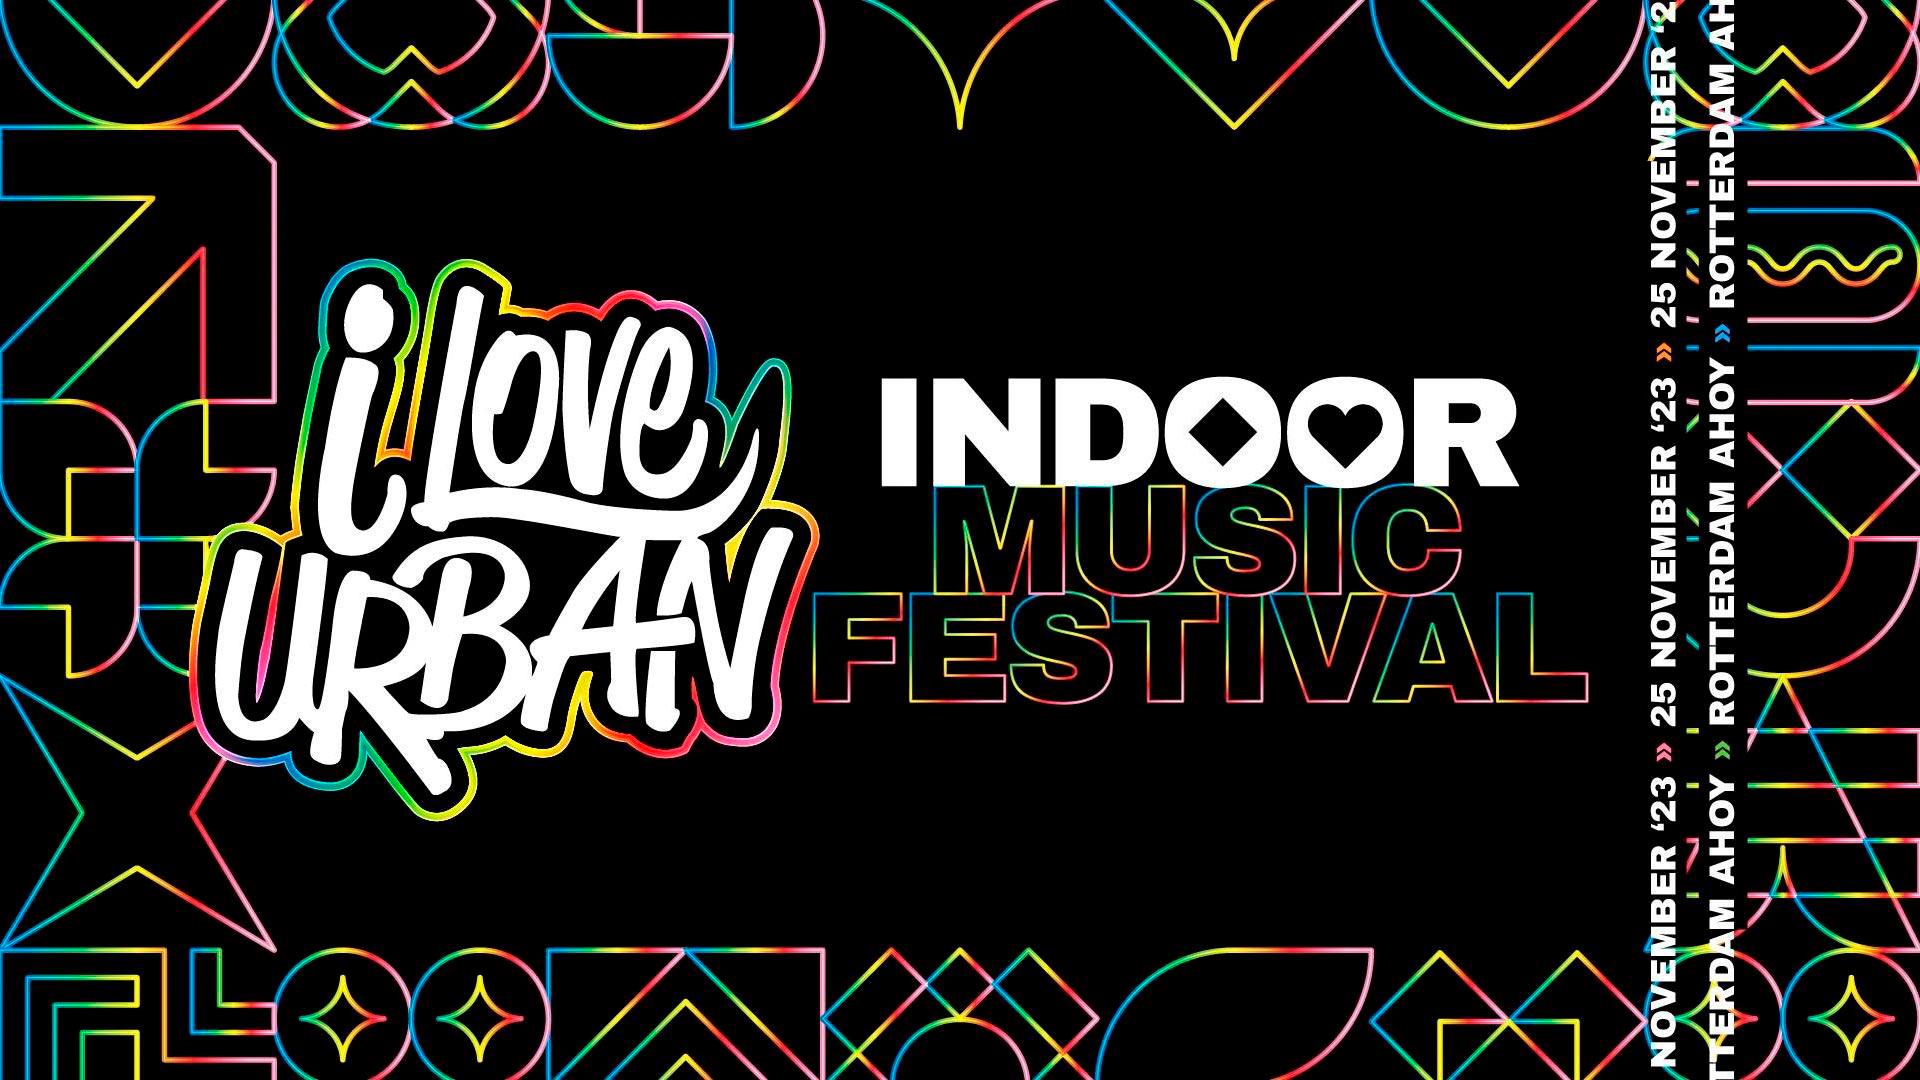 I Love Urban - Indoor Music Festival